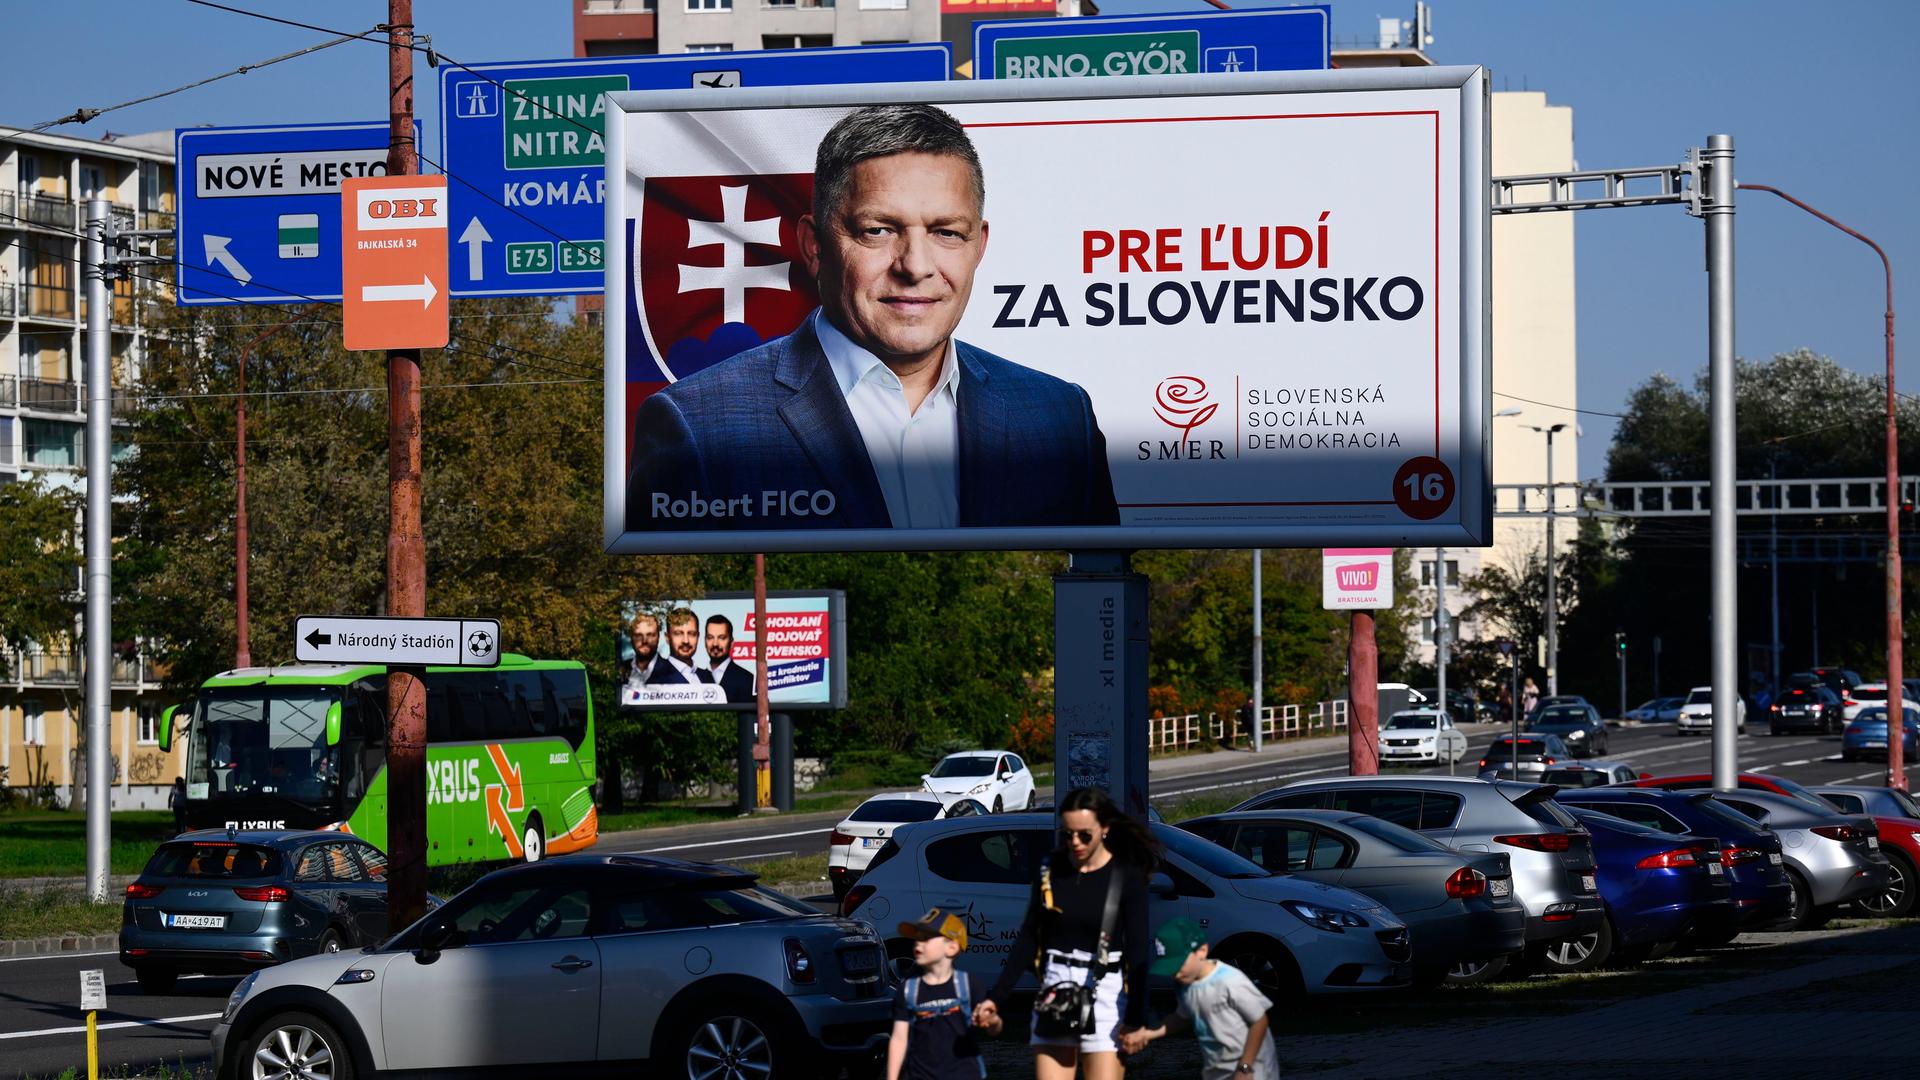 Slowakei - Partei von Ex-Ministerpräsident Fico gewinnt Parlamentswahl nach Wahlkampf mit pro-russischen Haltungen